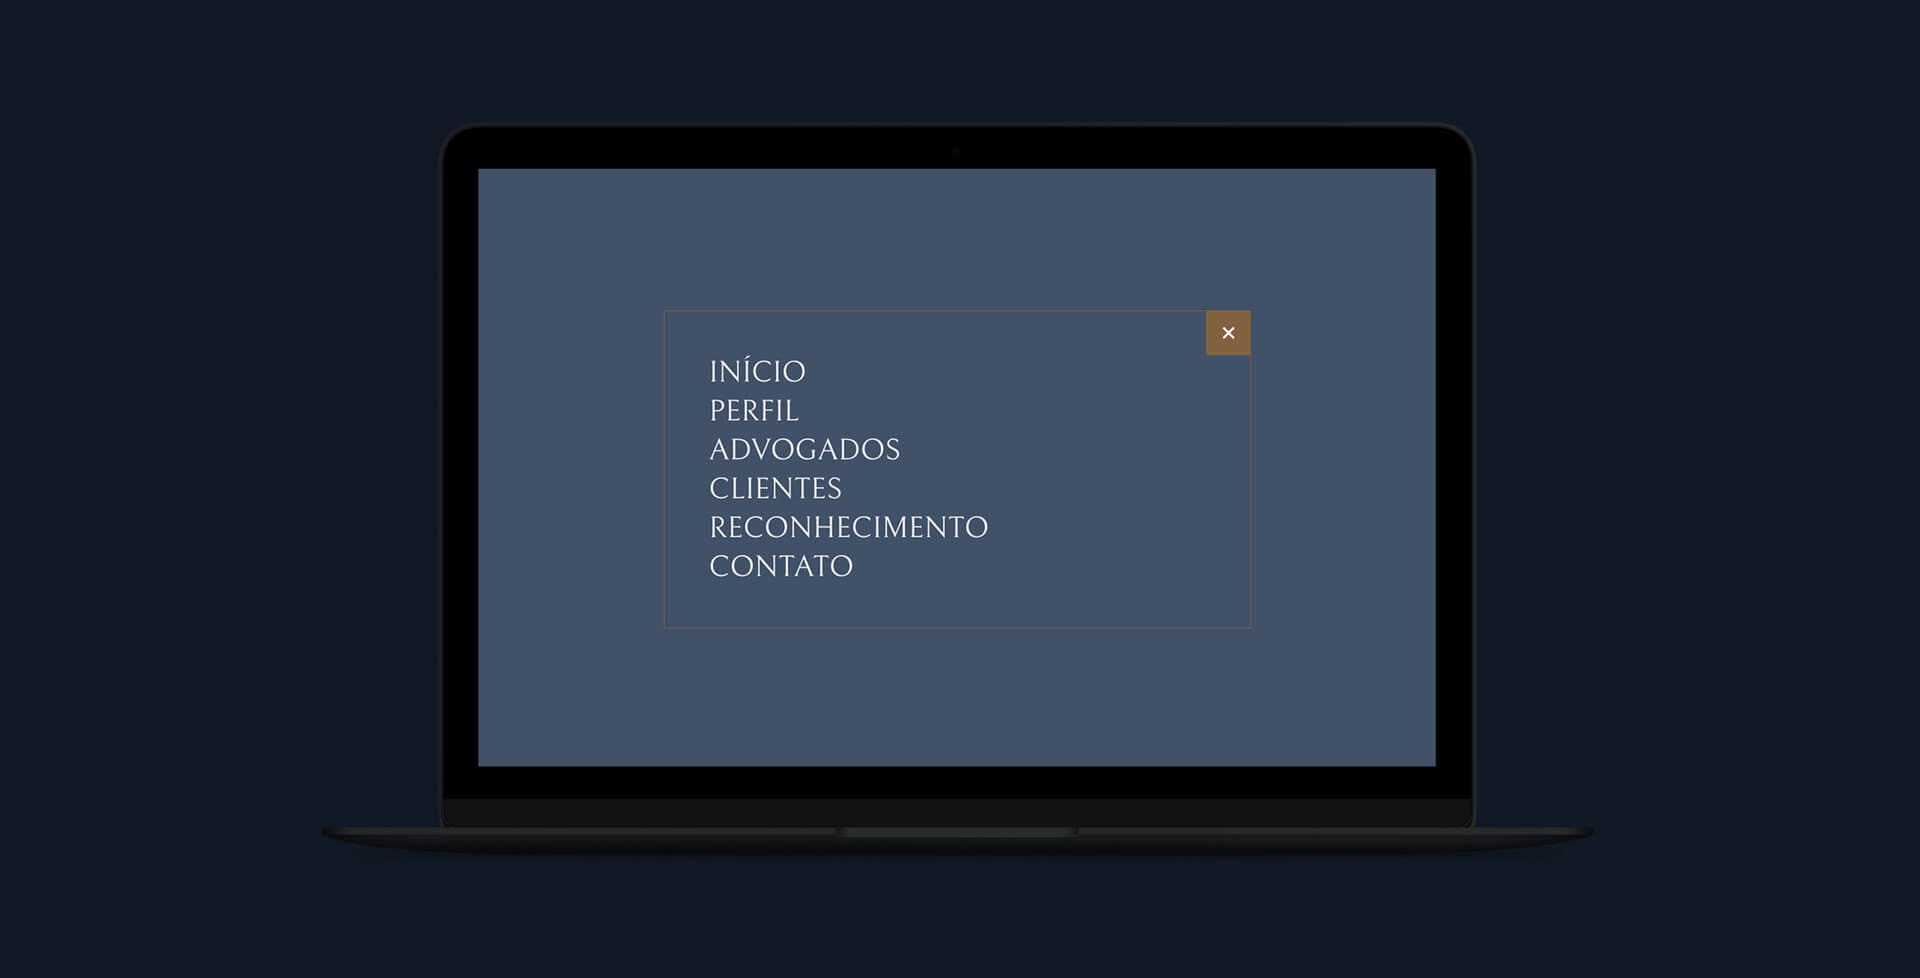 Simulação de menu ativo no site JCL Telles Advocacia.